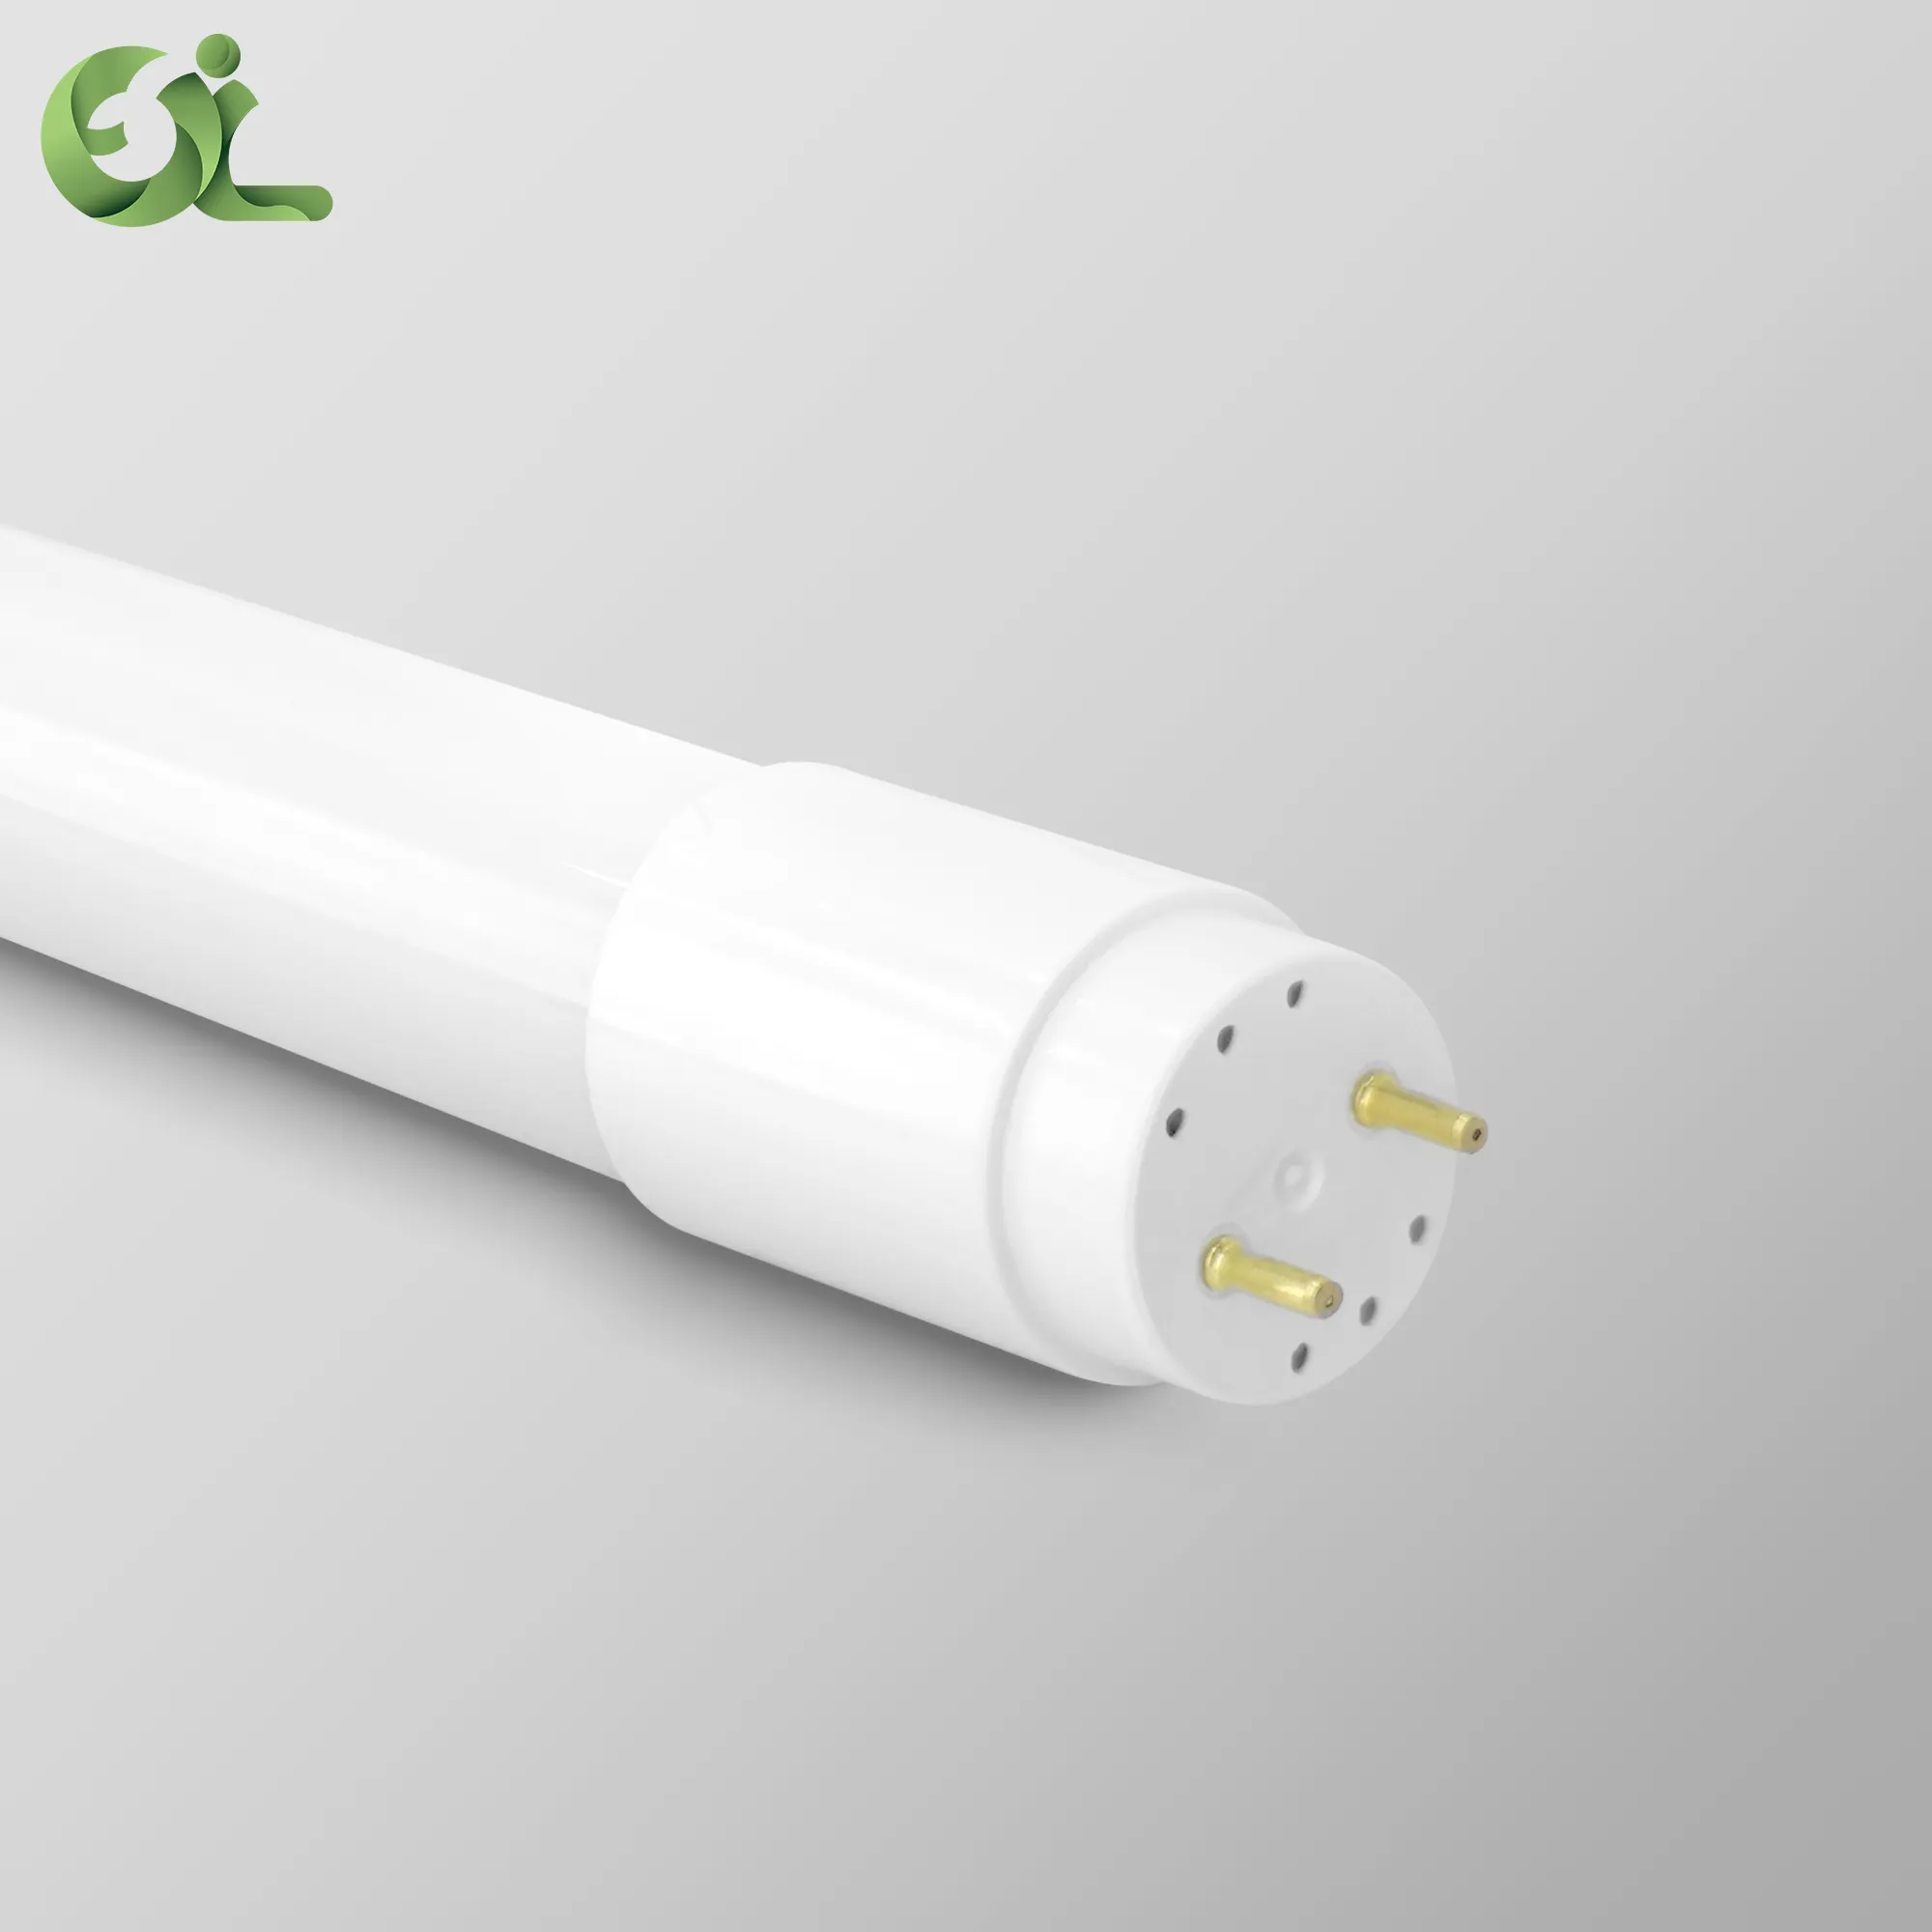 Tubo LED T8 de 16W para hogar o industria Venta caliente y cubierta de precio de fábrica Lámpara de cuerpo de luz luminosa Artículo Iluminación Llama industrial